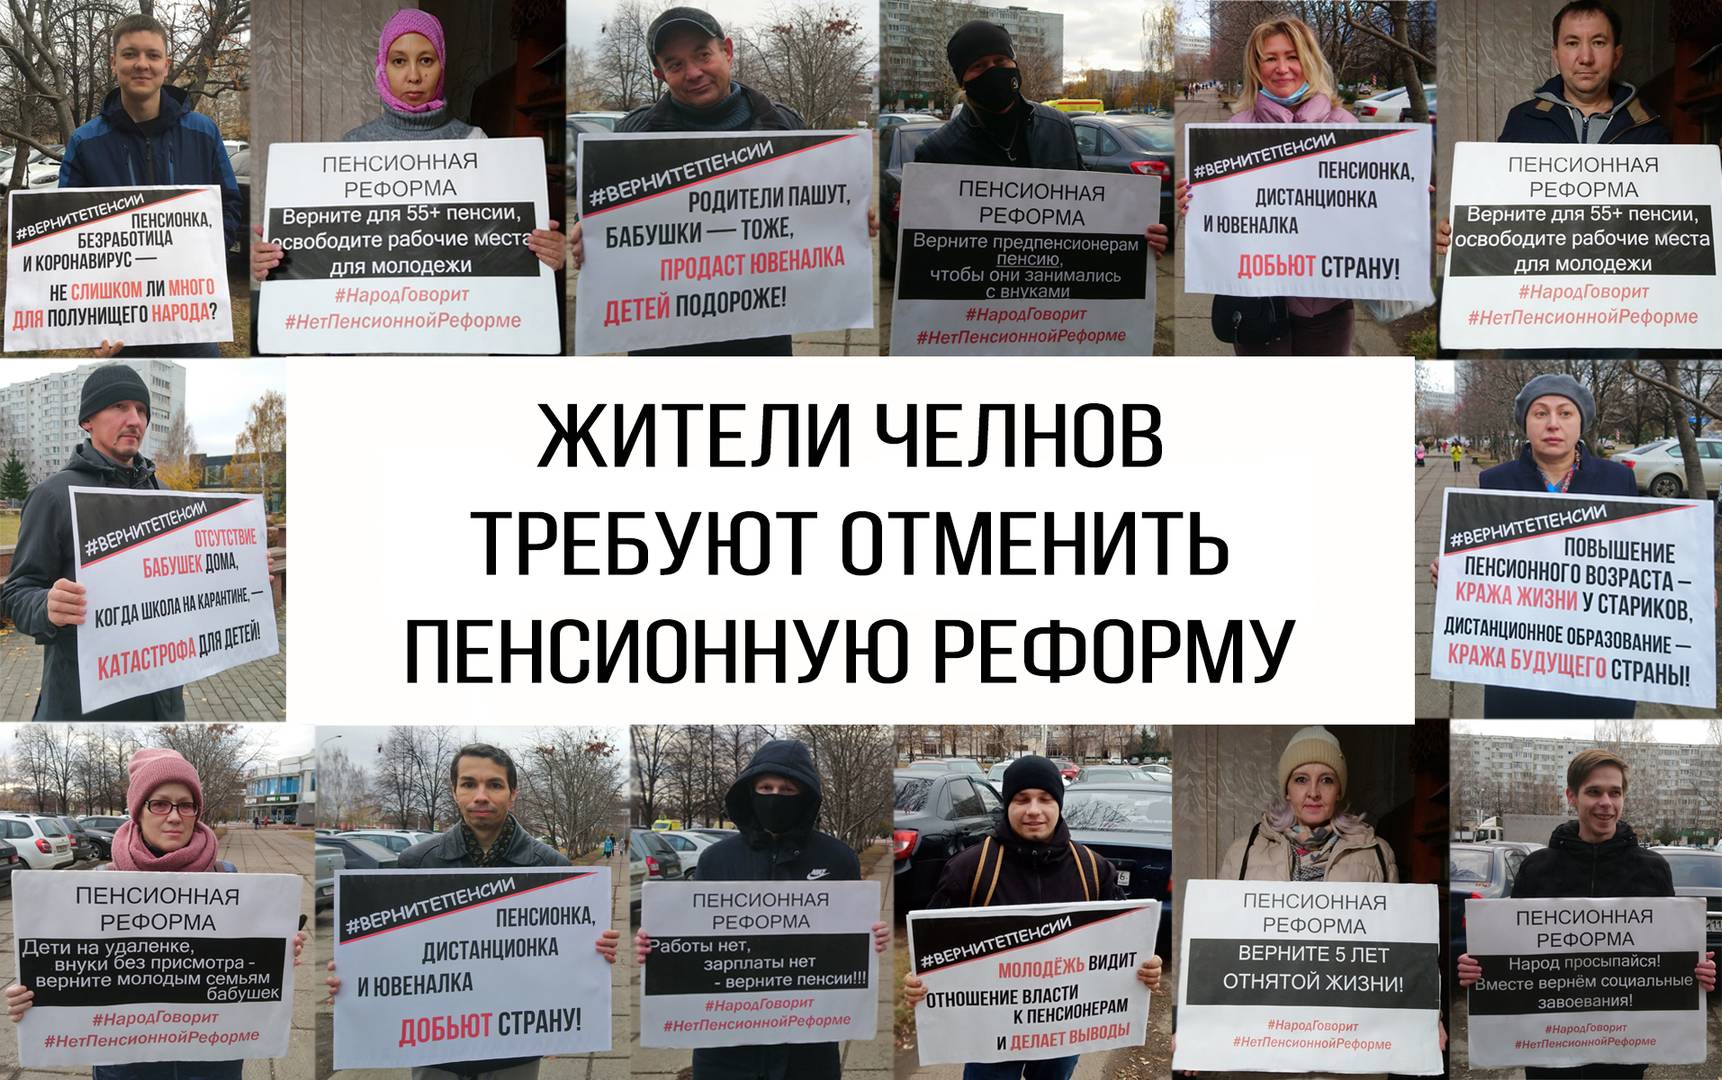 Пикет против пенсионной реформы, Набережные Челны, 03.11.2020